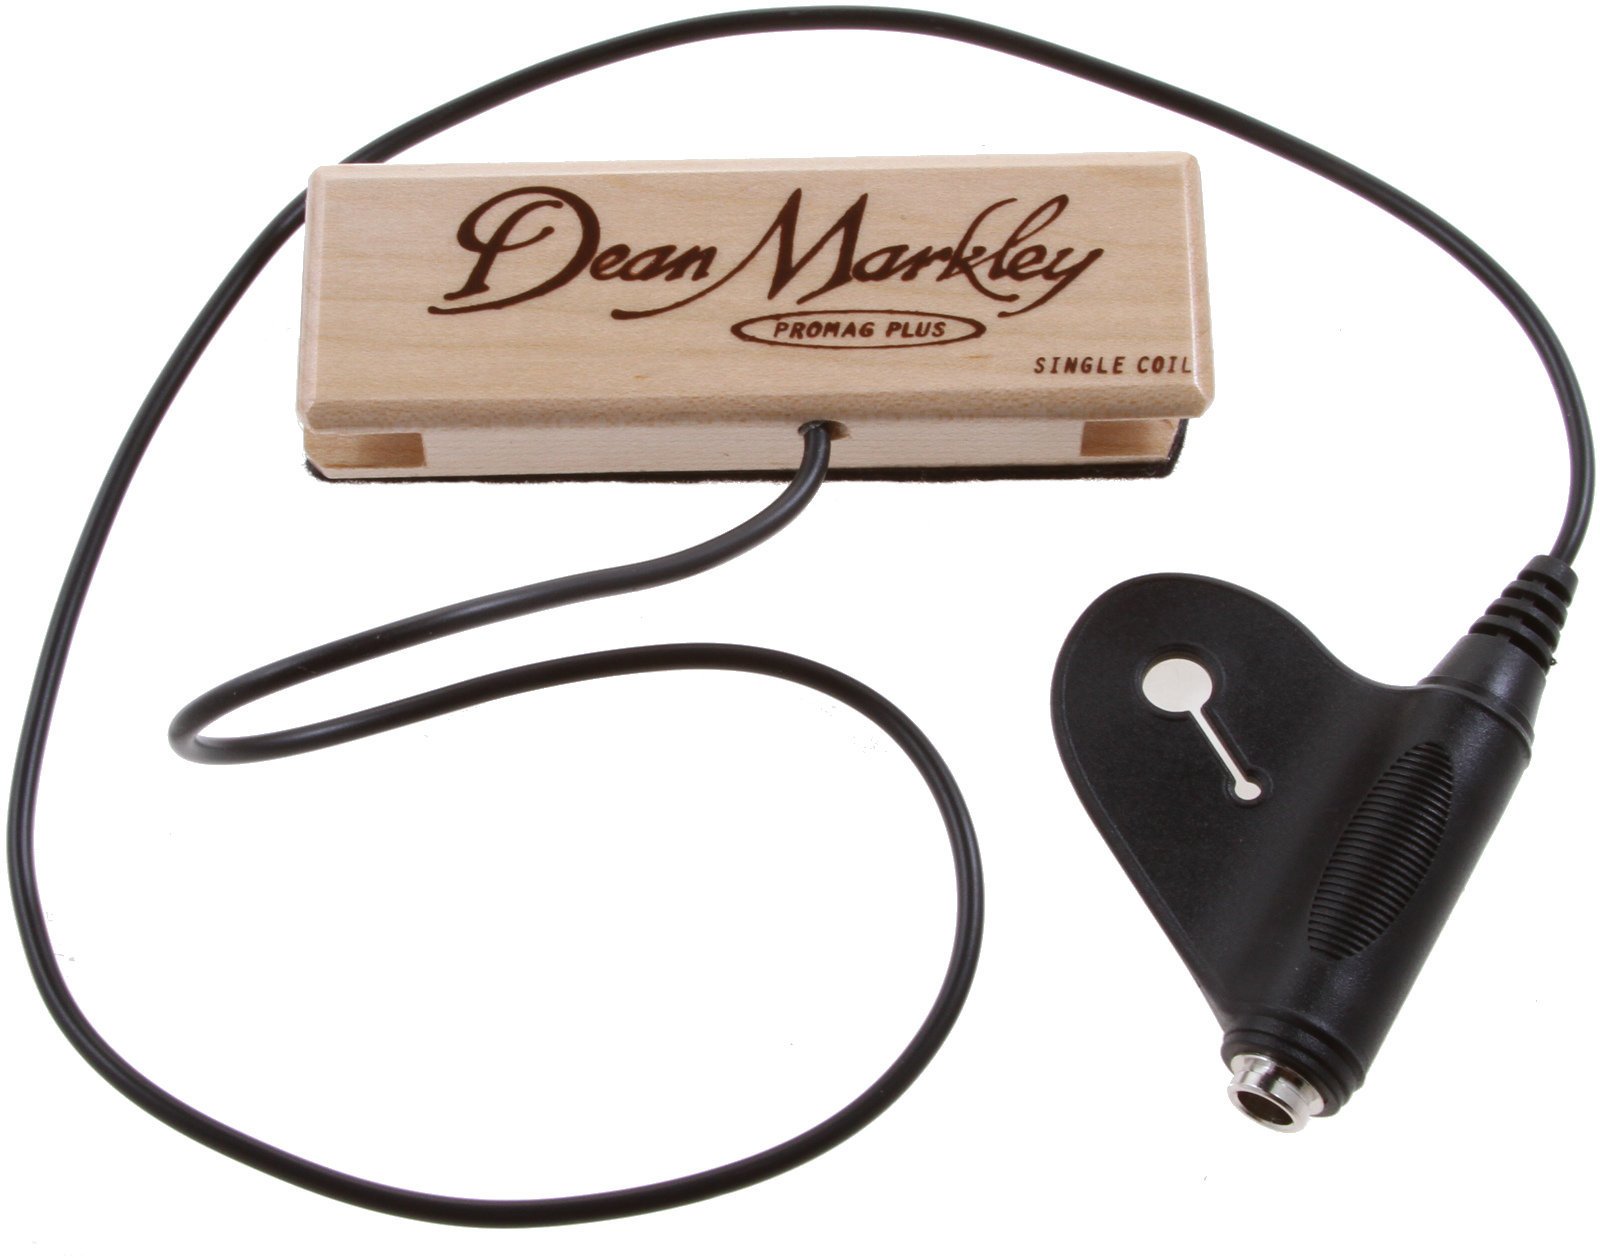 Pickup til akustisk guitar Dean Markley 3011 ProMag Plus XM